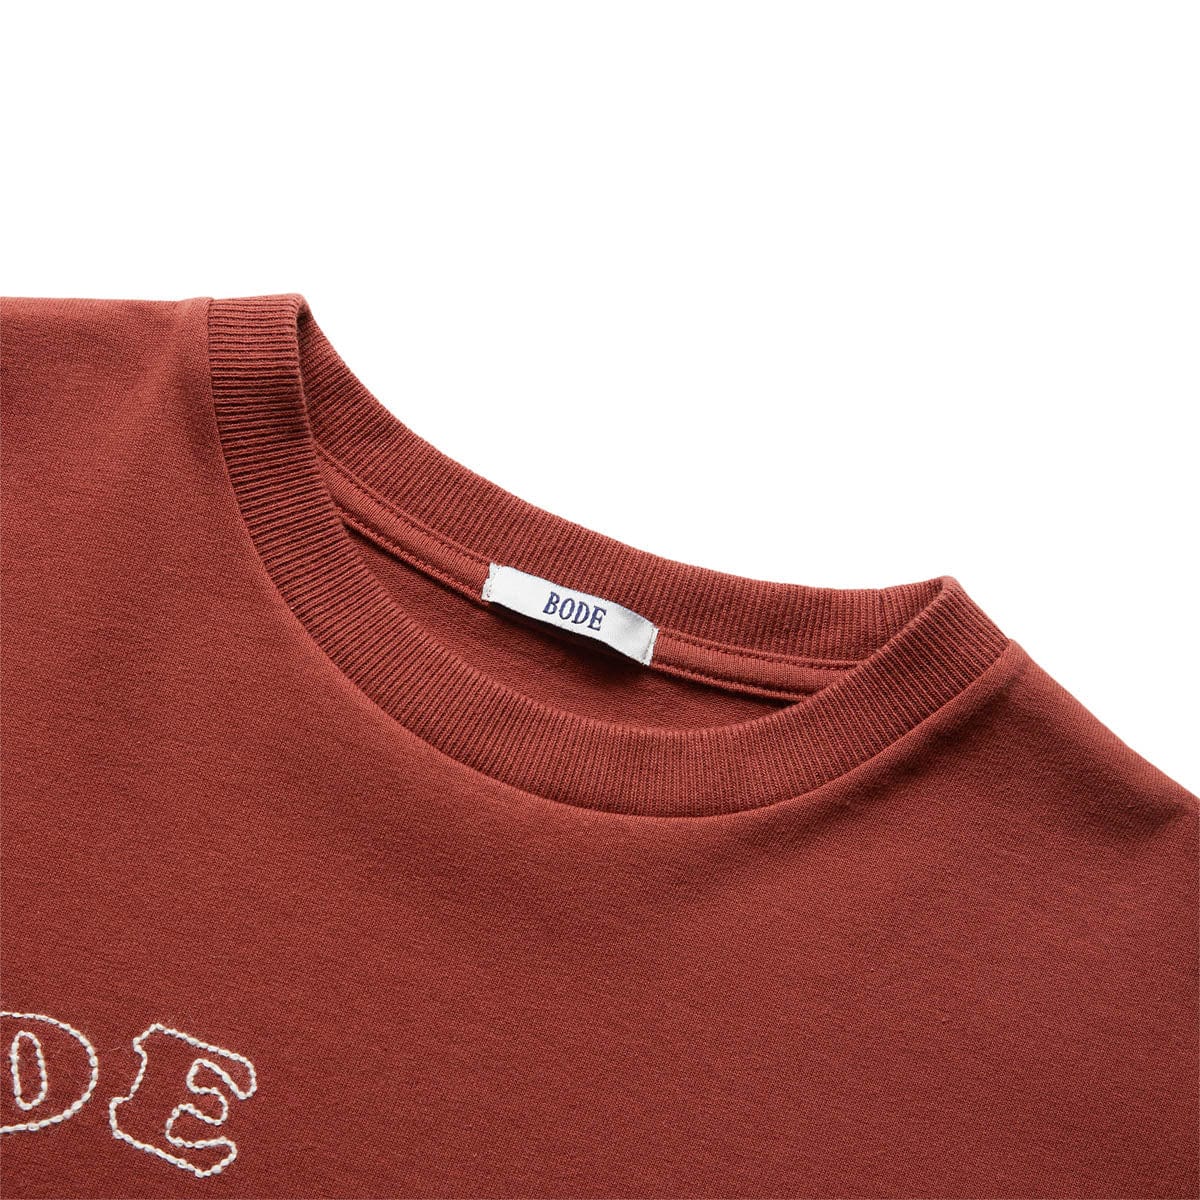 Print | SHIRT Sie - EMBROIDERED Kleinen PONY - einen Garderobe Erweitern T um mit bezaubernden Rooster von GmarShops Ihrer dem BROWN T-Shirt die